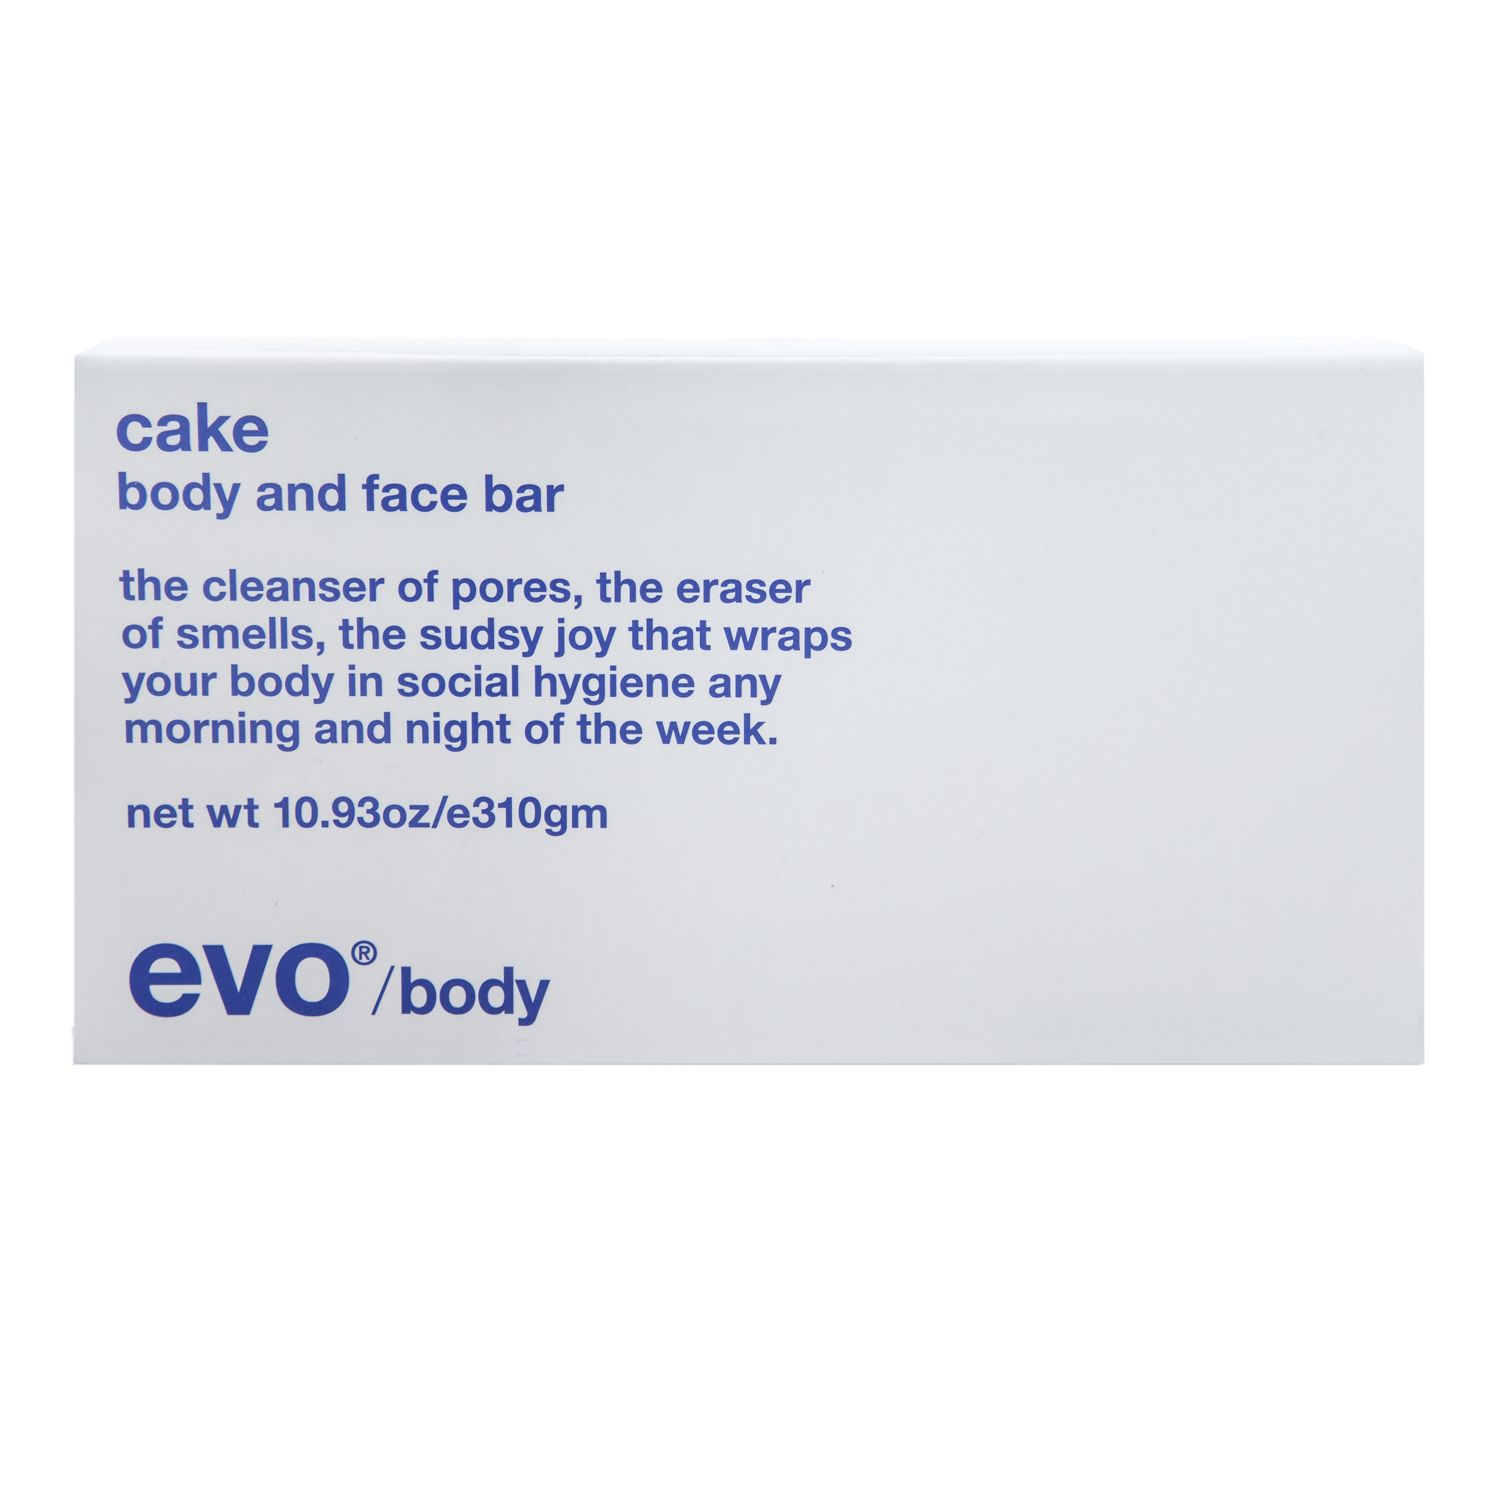 cake body and face bar/[кусок] увлажняющее мыло для лица и тела310гр